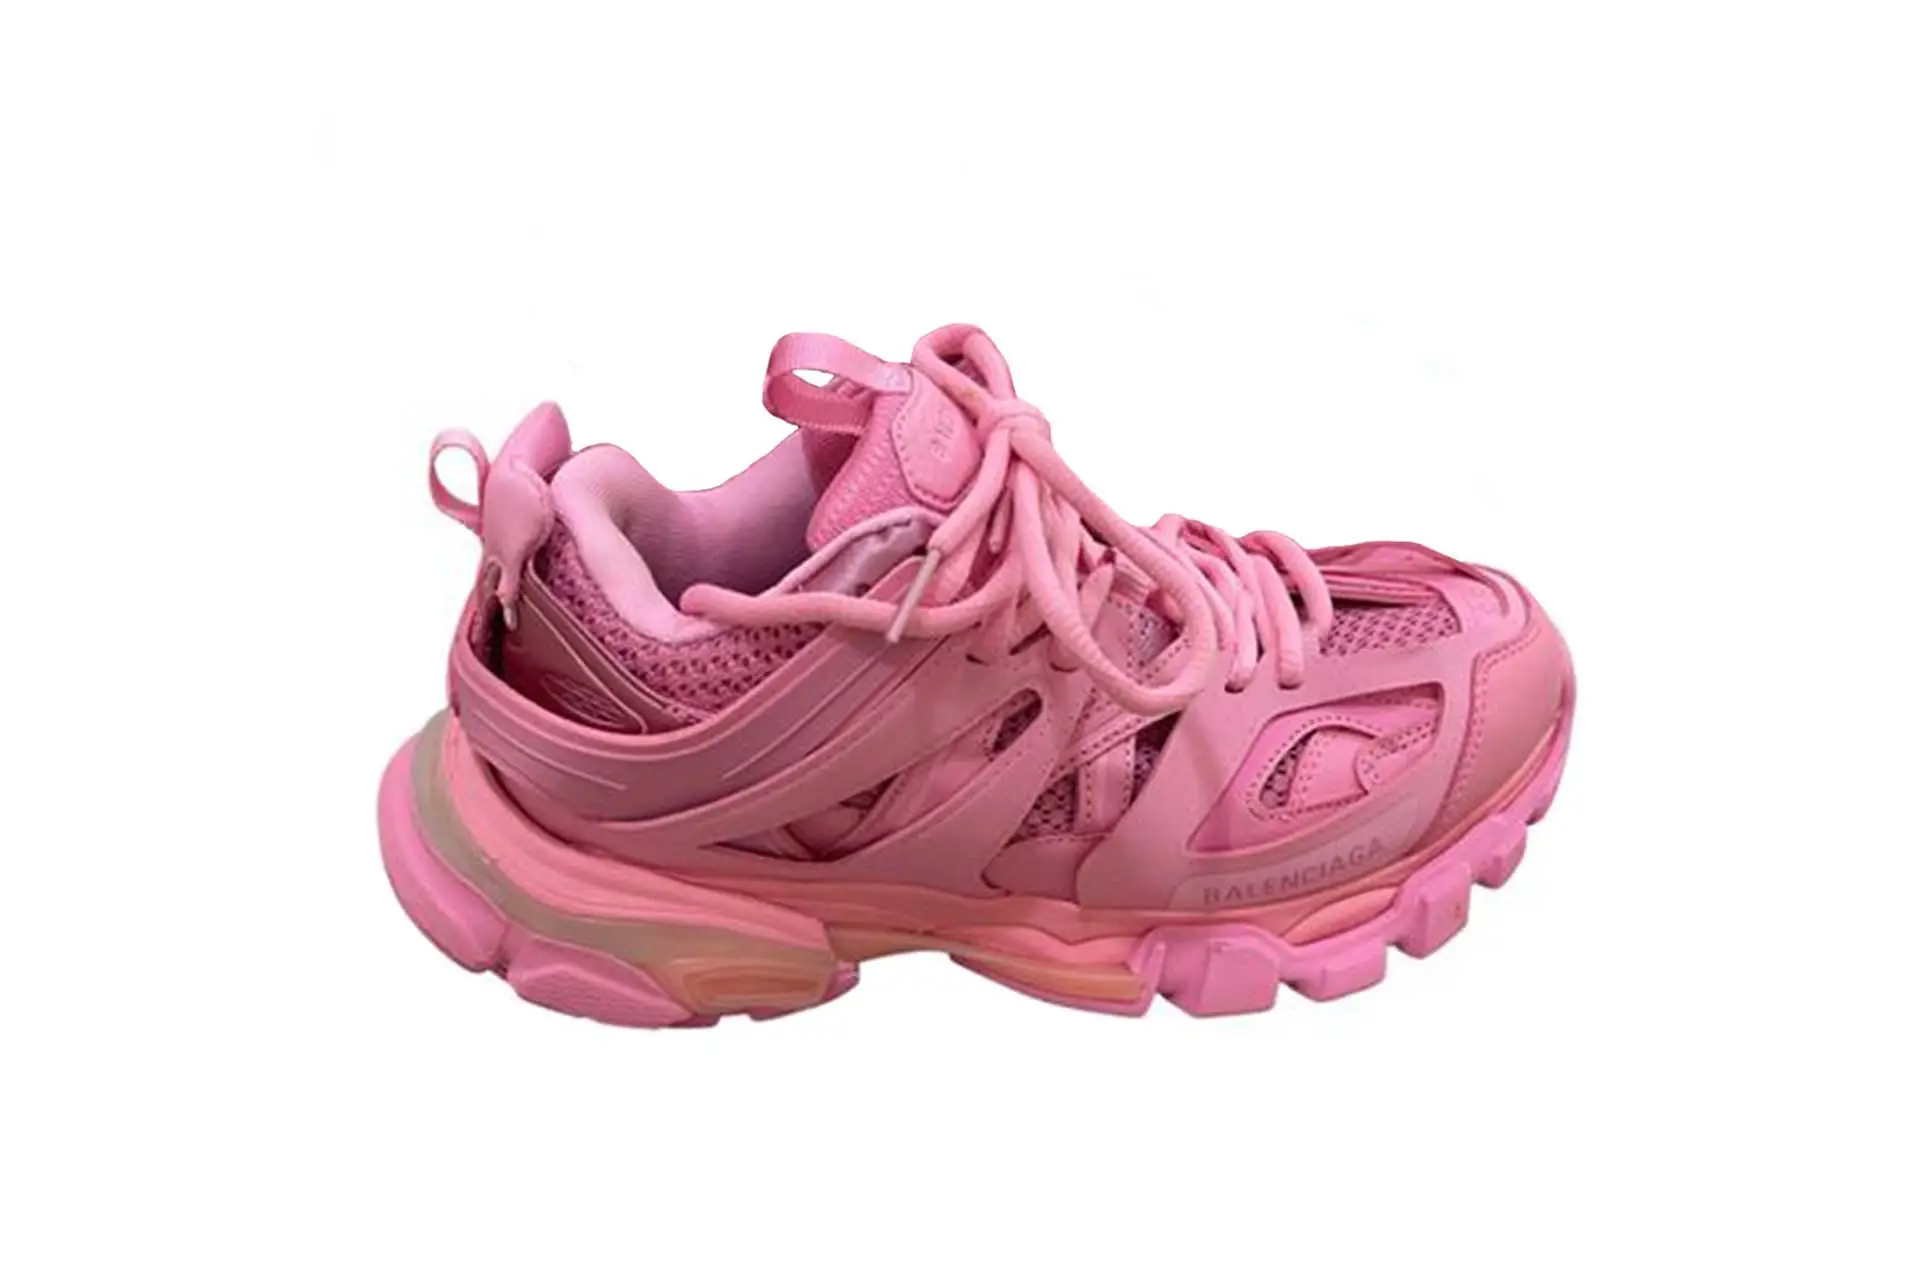 streetwear-pink-sneakers.jpg